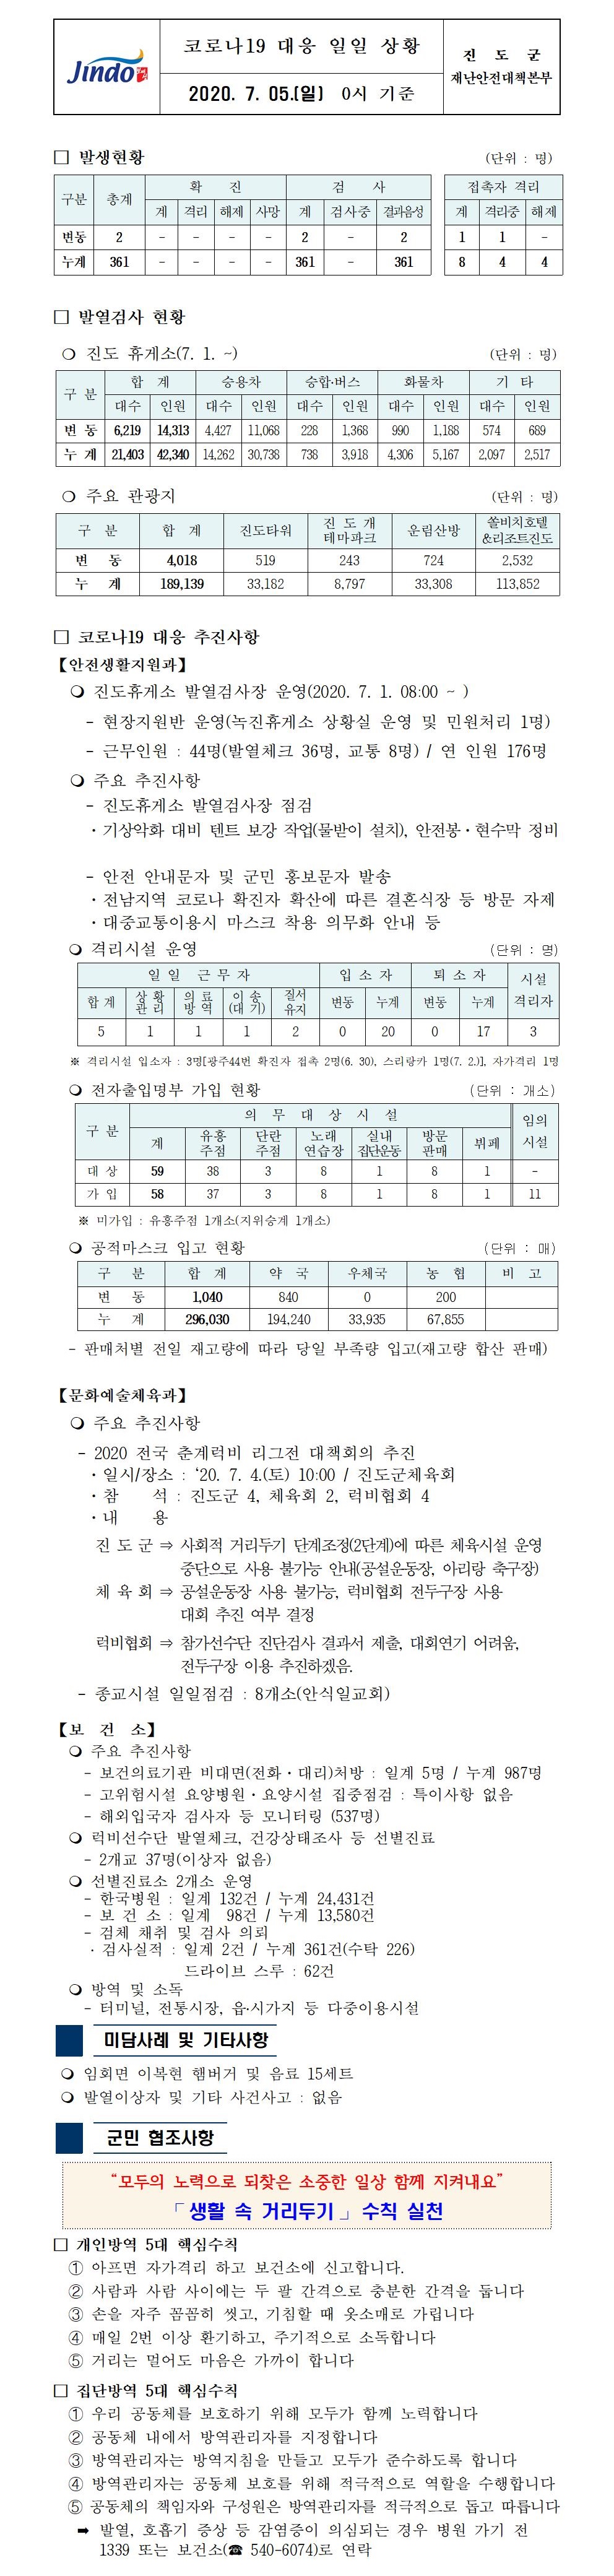 코로나19대응 일일 상황 보고(7월 5일 0시 기준) 첨부#1